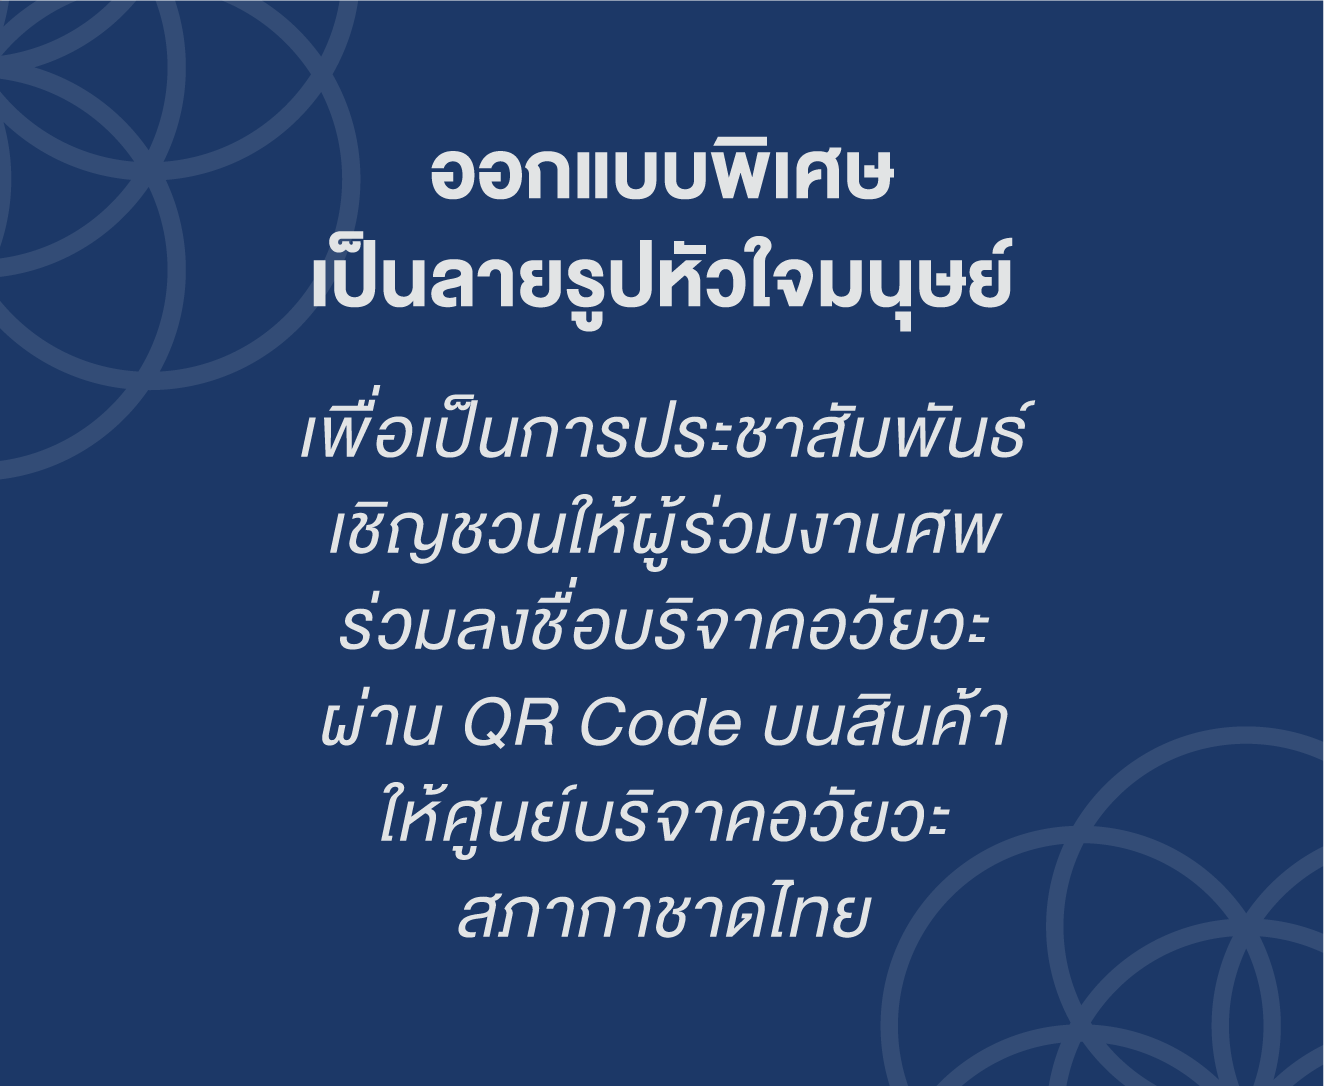 ออกแบบพิเศษเป็นลายรูปหัวใจมนุษย์ เพื่อเป็นการประชาสัมพันธ์เชิญชวนให้ผู้ร่วมงานศพร่วมลงชื่อบริจาคอวัยวะผ่าน QR Code บนสินค้าให้ศูนย์บริจาคอวัยวะสภากาชาดไทย